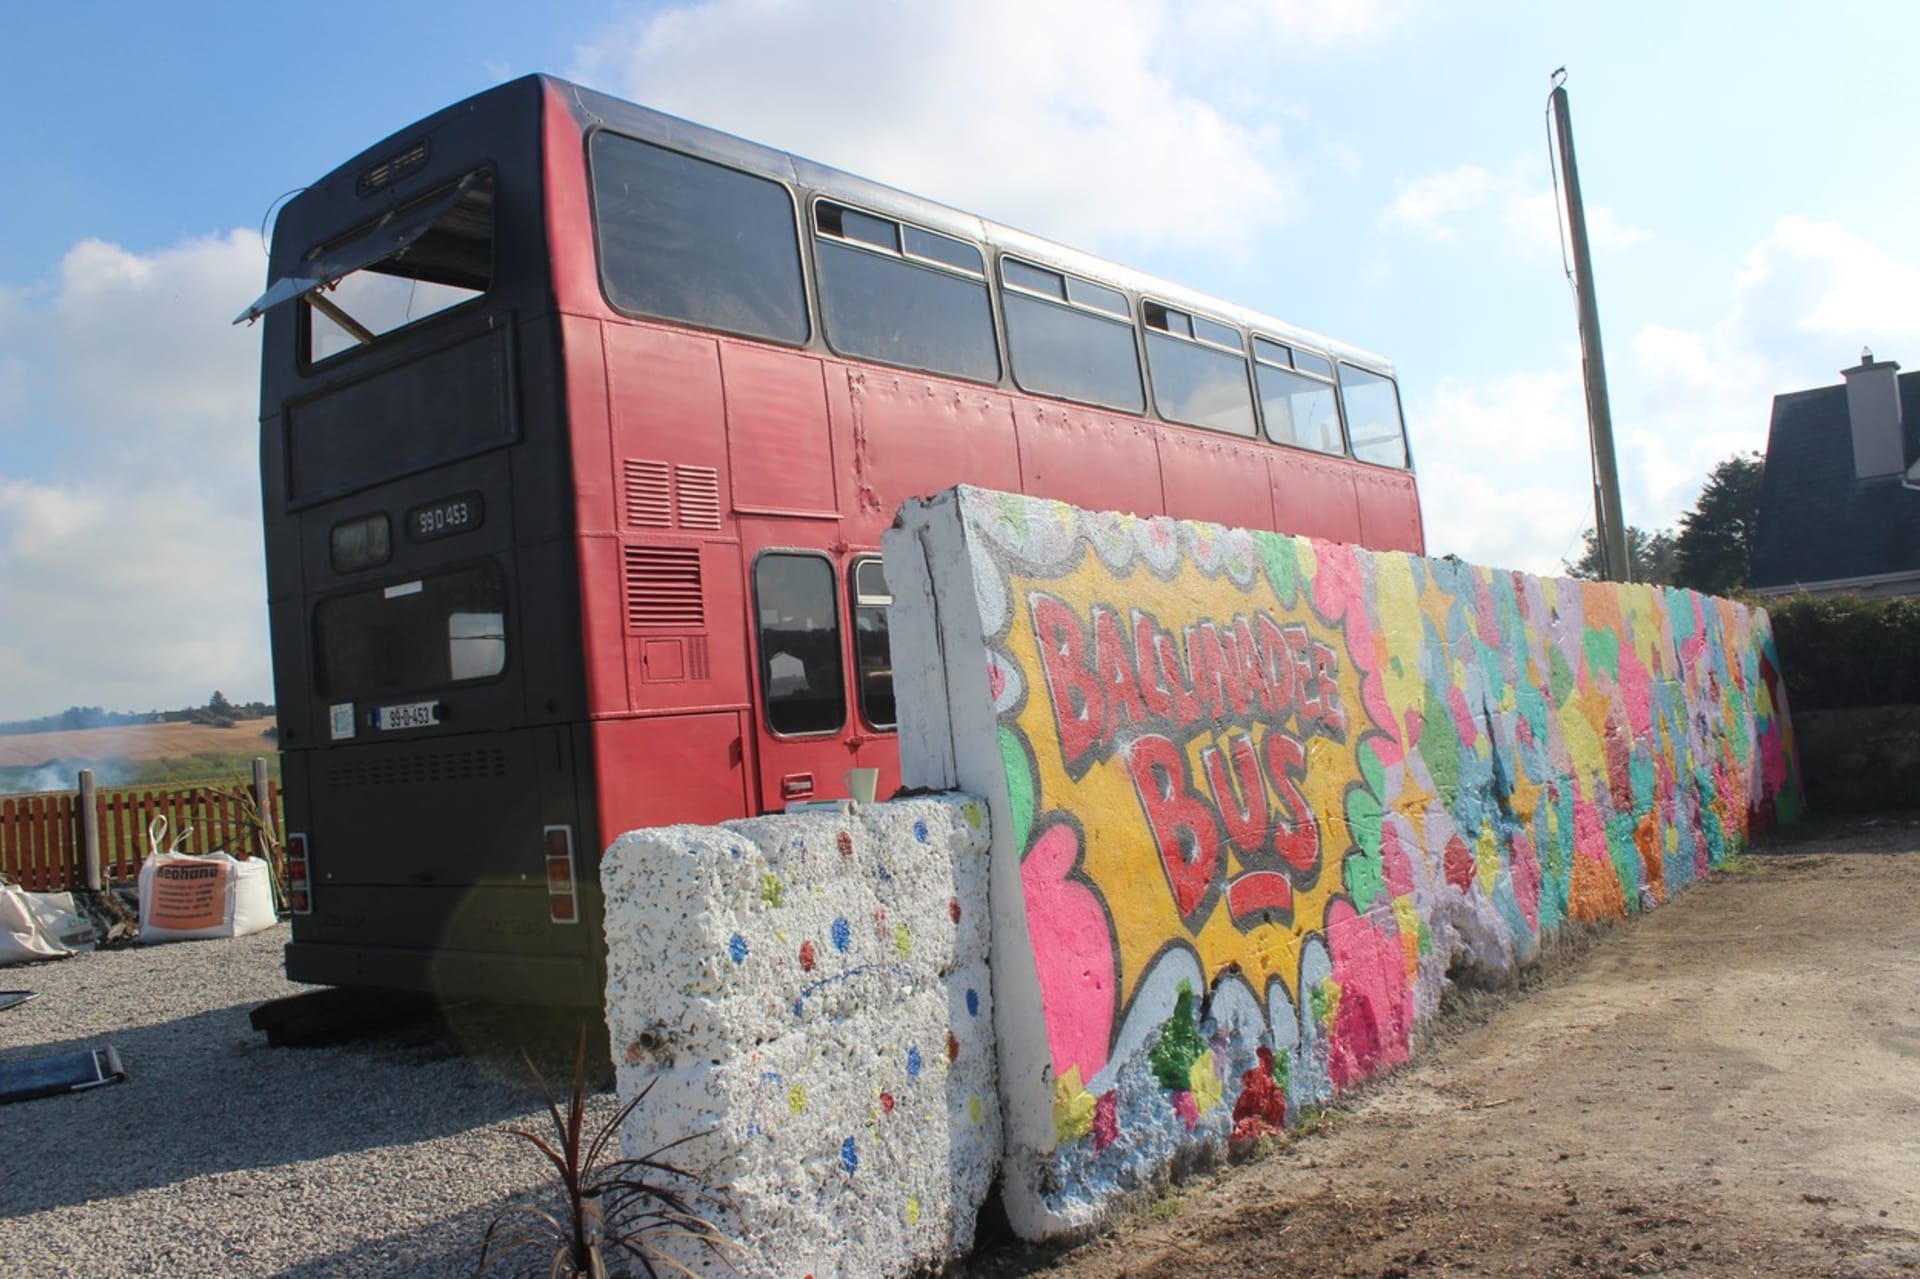 Autobus stojí na místě, ale doplňuje ho stěna s graffiti